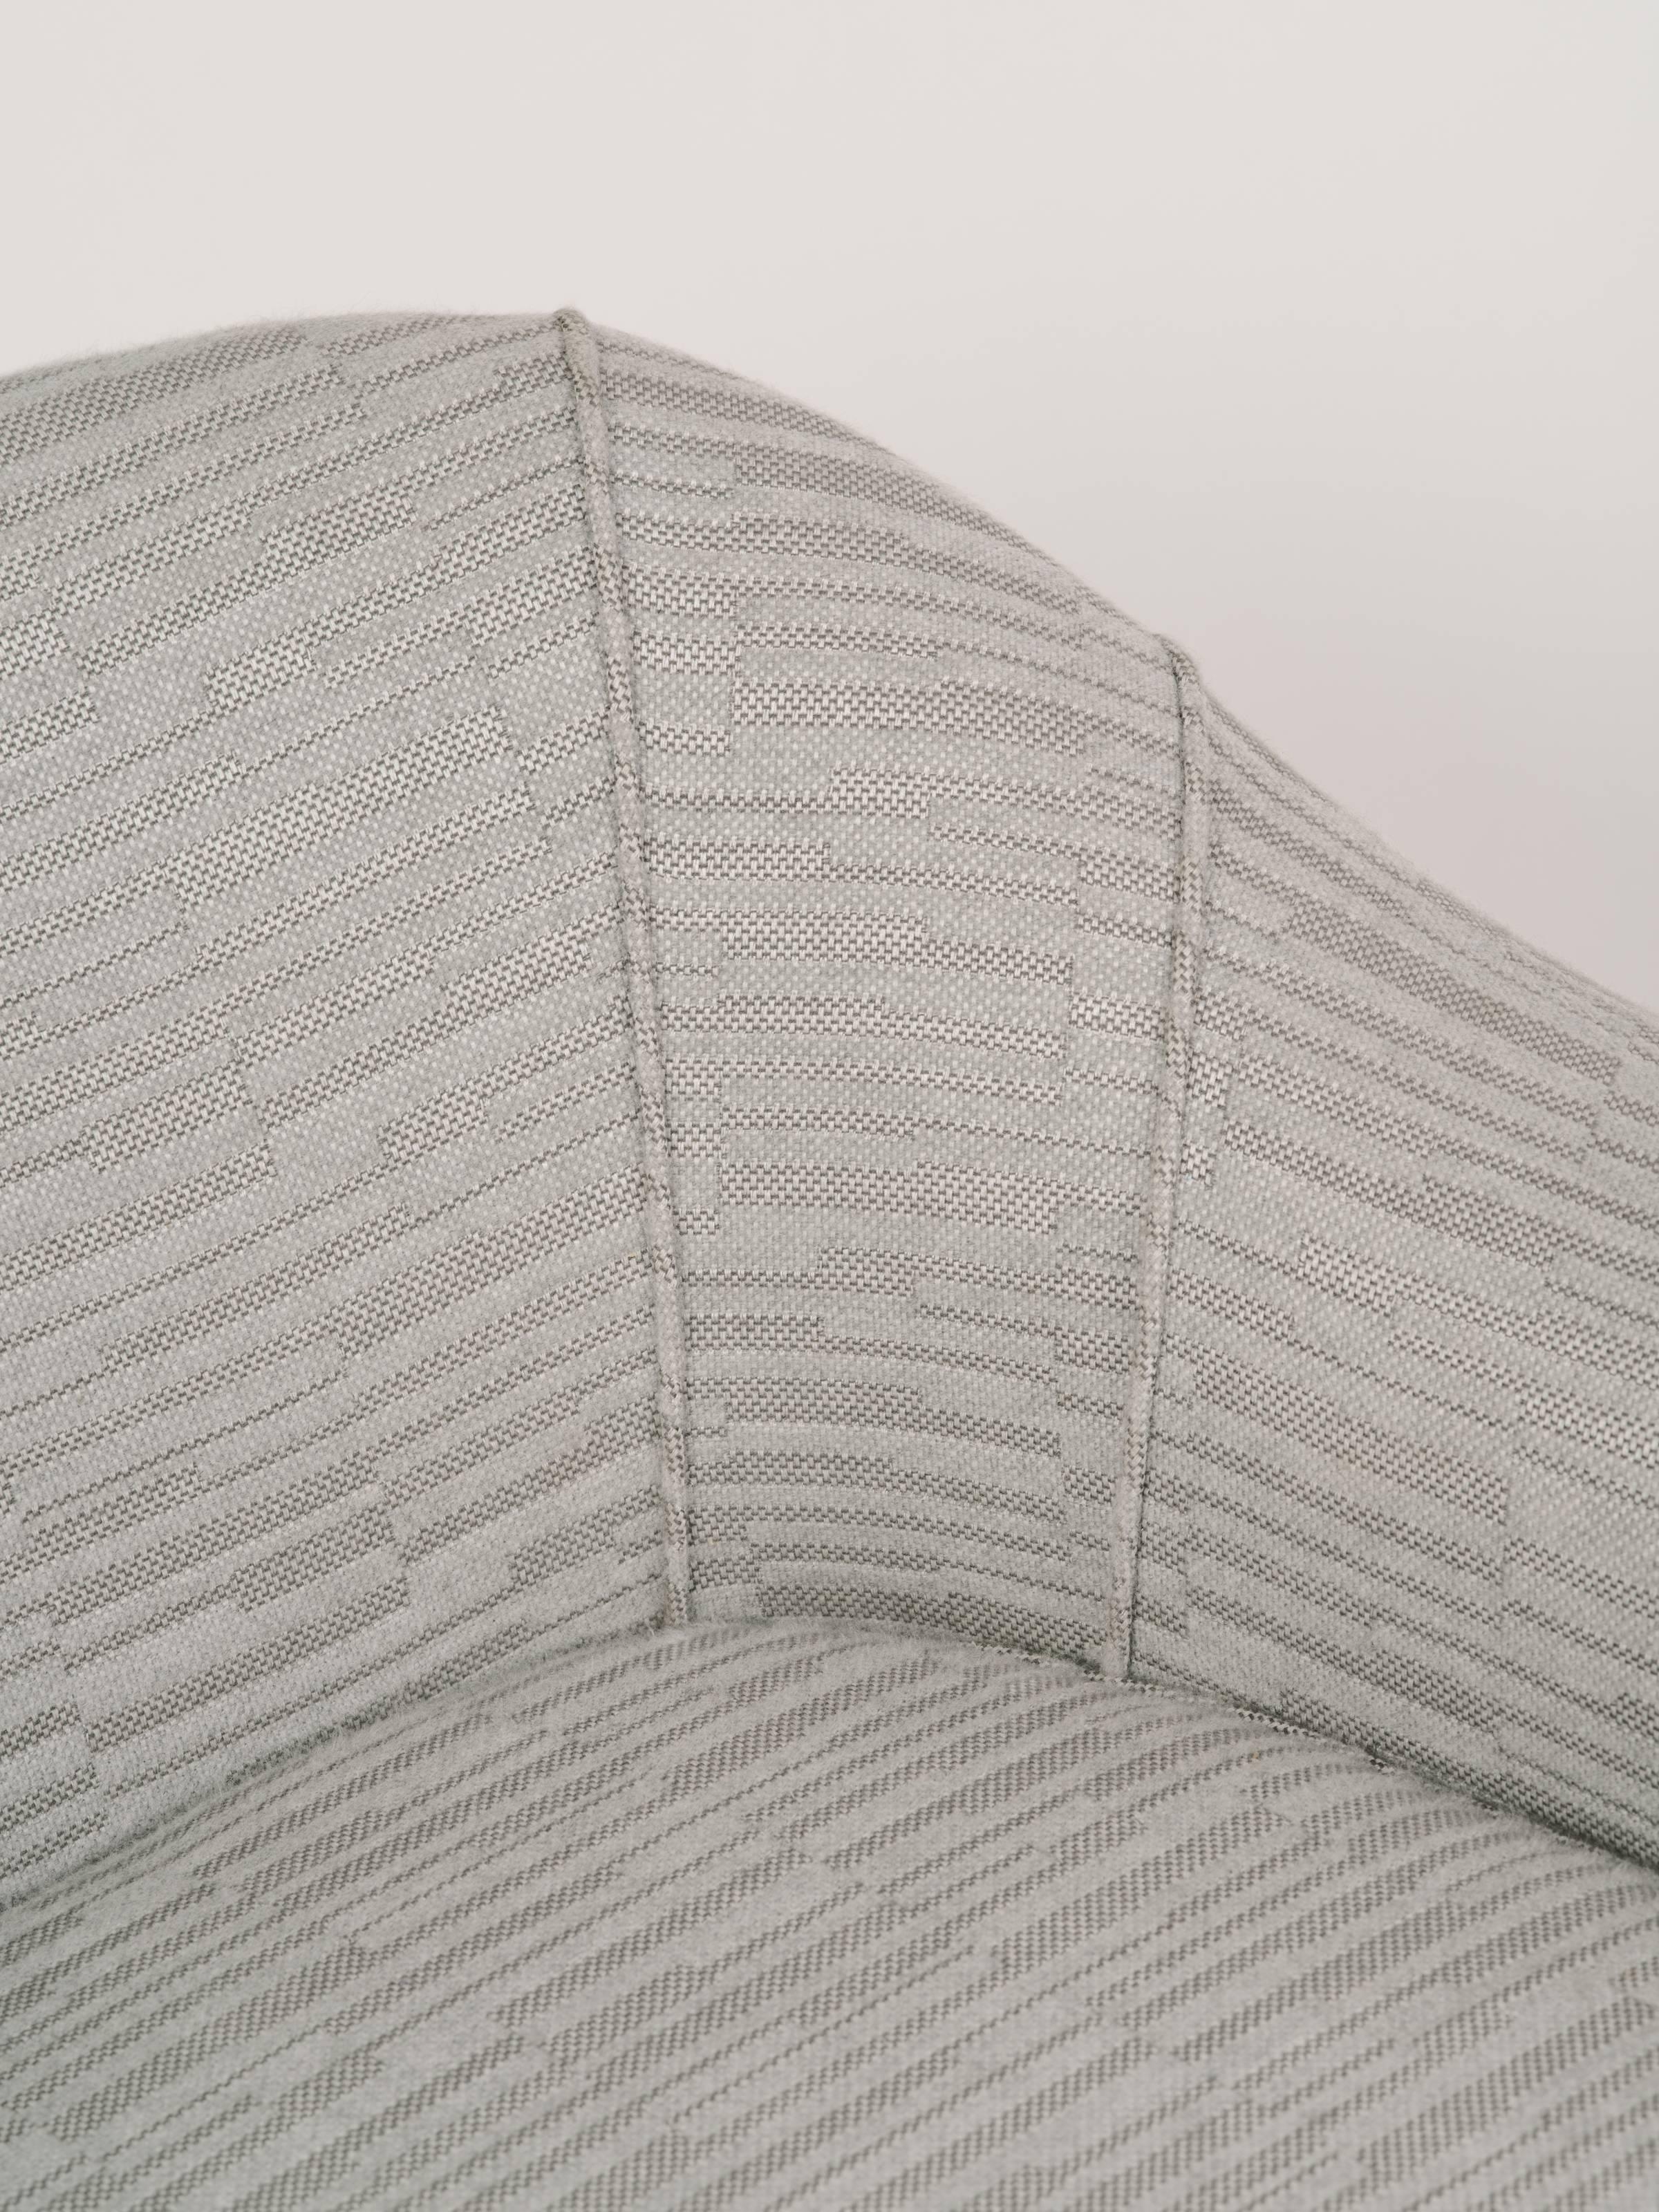 Elegant Mid-Century Modern Swan Chair in Embossed Woven Wool 5